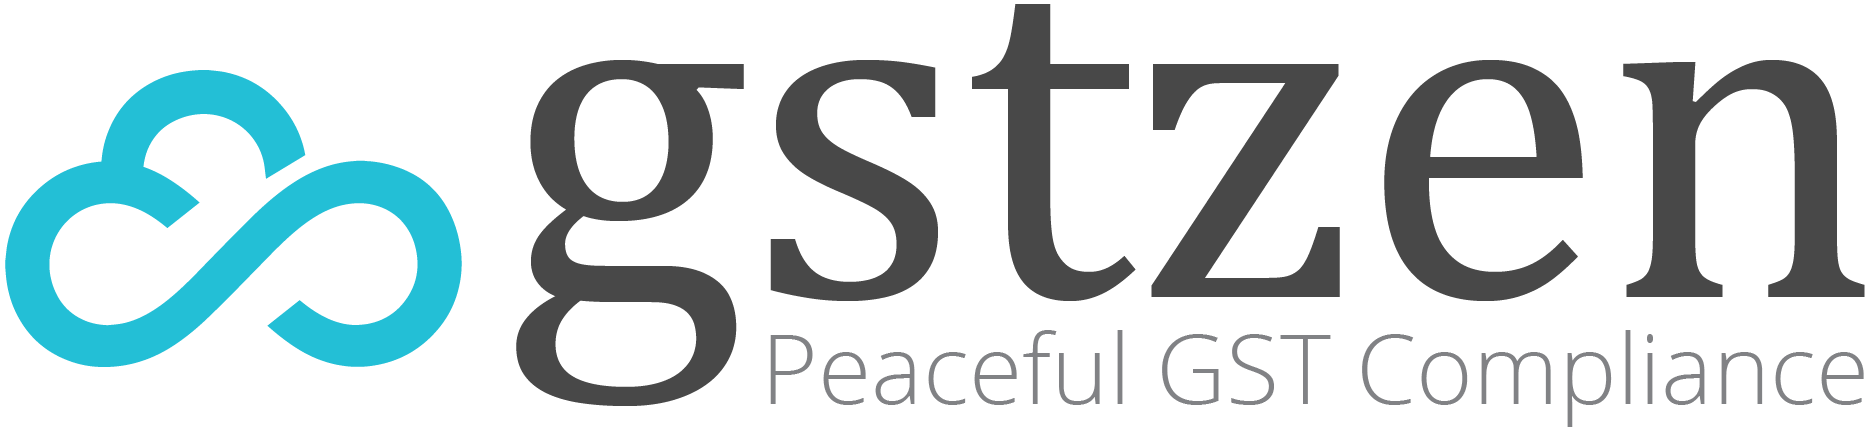 GSTZen | Peaceful GST Compliance